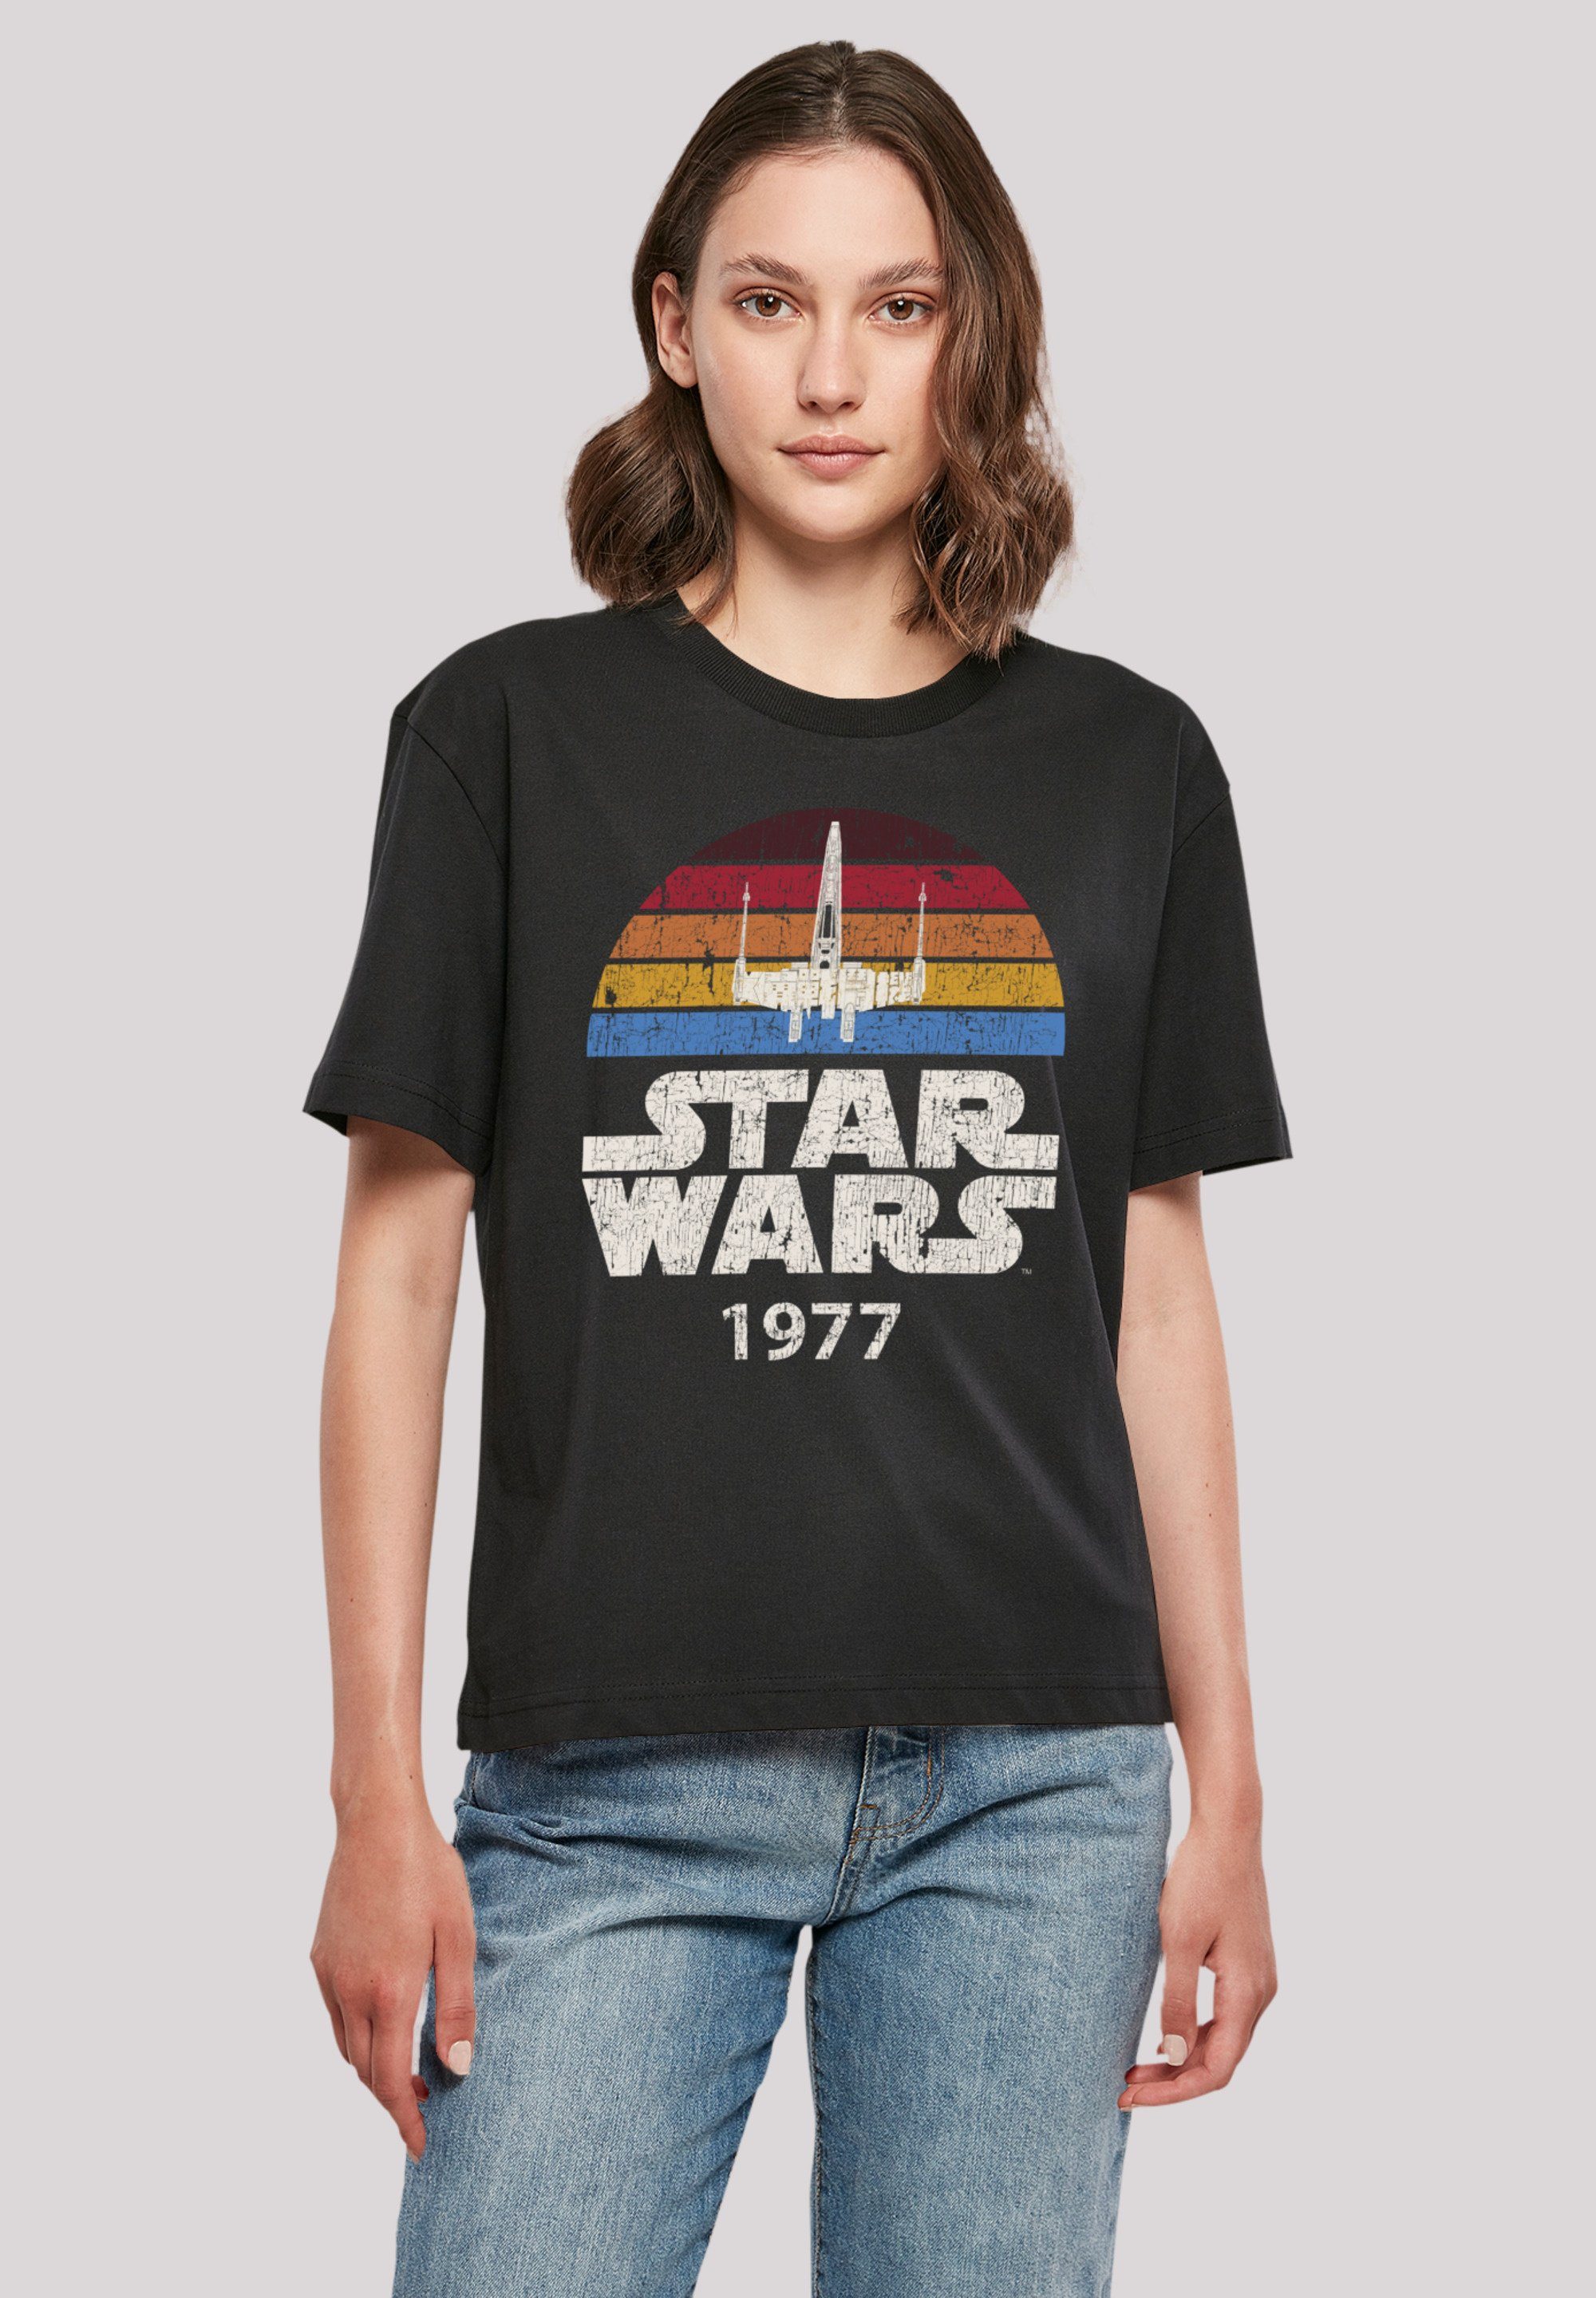 F4NT4STIC T-Shirt Star Wars X-Wing Trip 1977 Premium Qualität, Offiziell  lizenziertes Star Wars T-Shirt